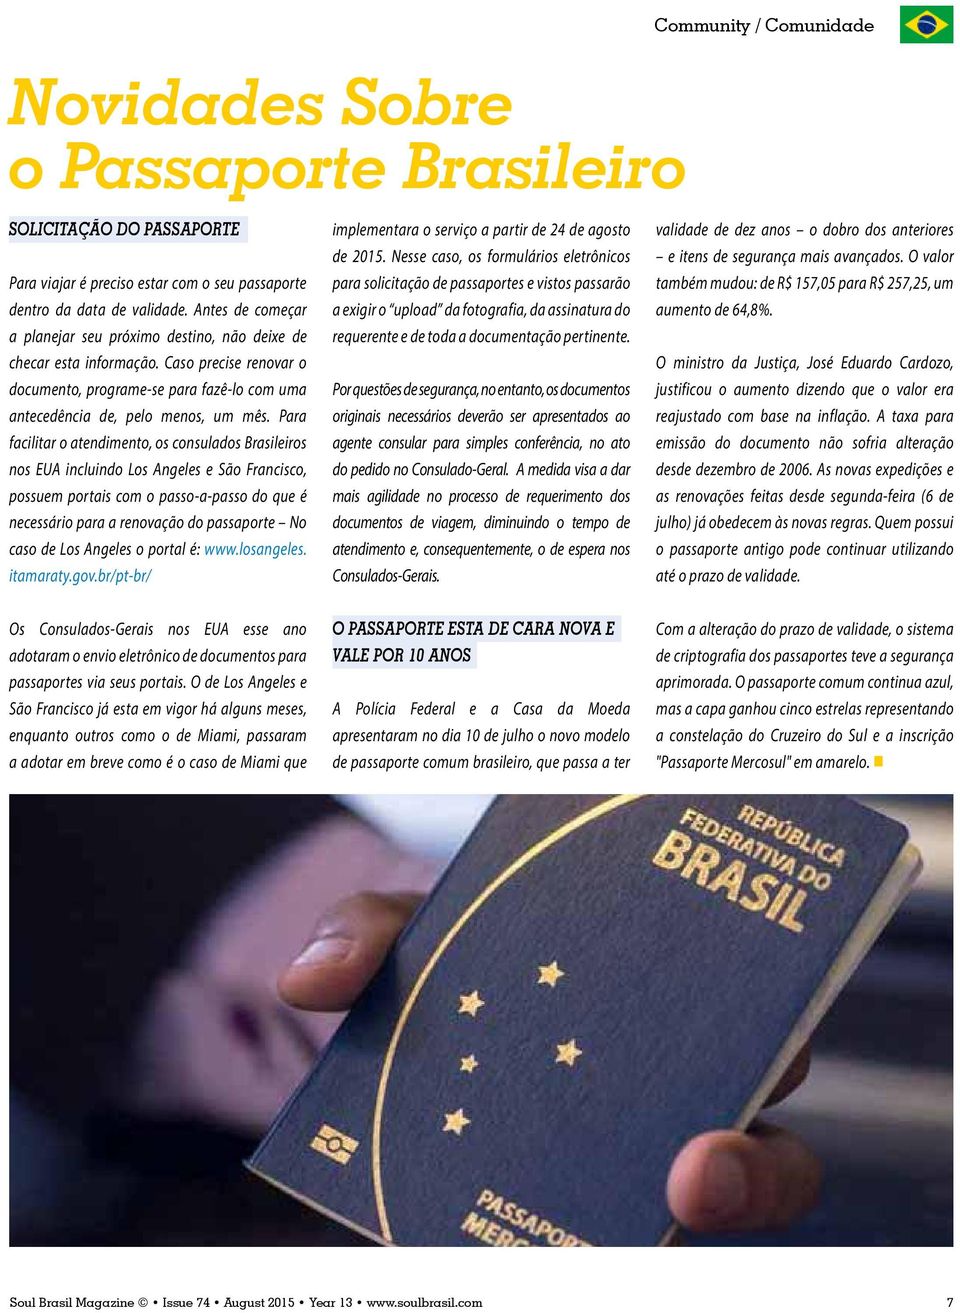 Para facilitar o atendimento, os consulados Brasileiros nos EUA incluindo Los Angeles e São Francisco, possuem portais com o passo-a-passo do que é necessário para a renovação do passaporte No caso